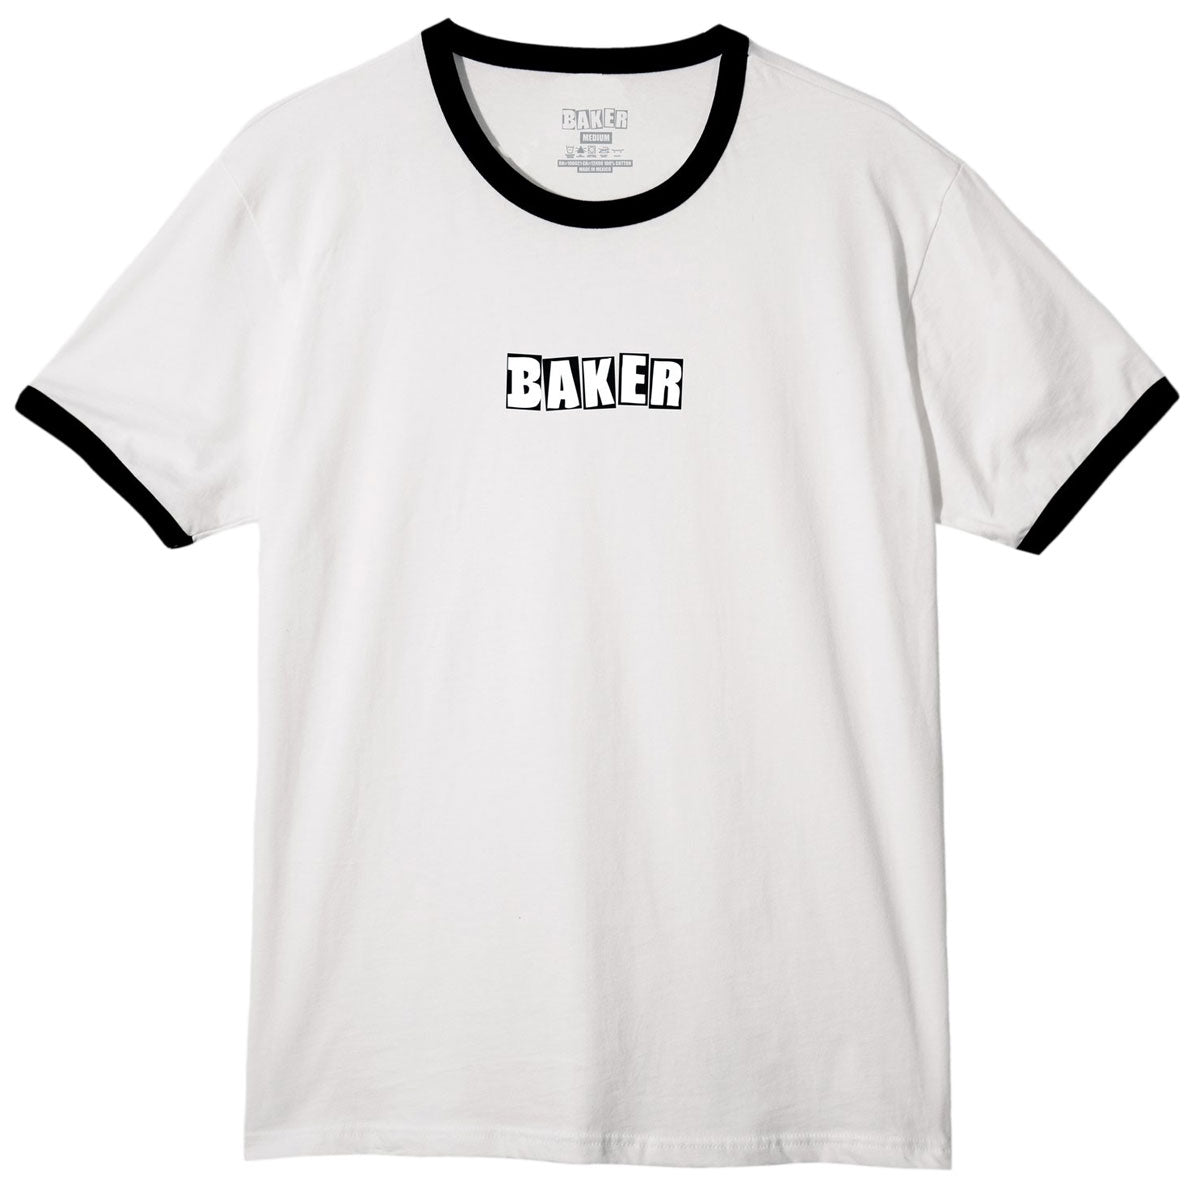 Baker Brand Logo T-Shirt - White/Black image 1